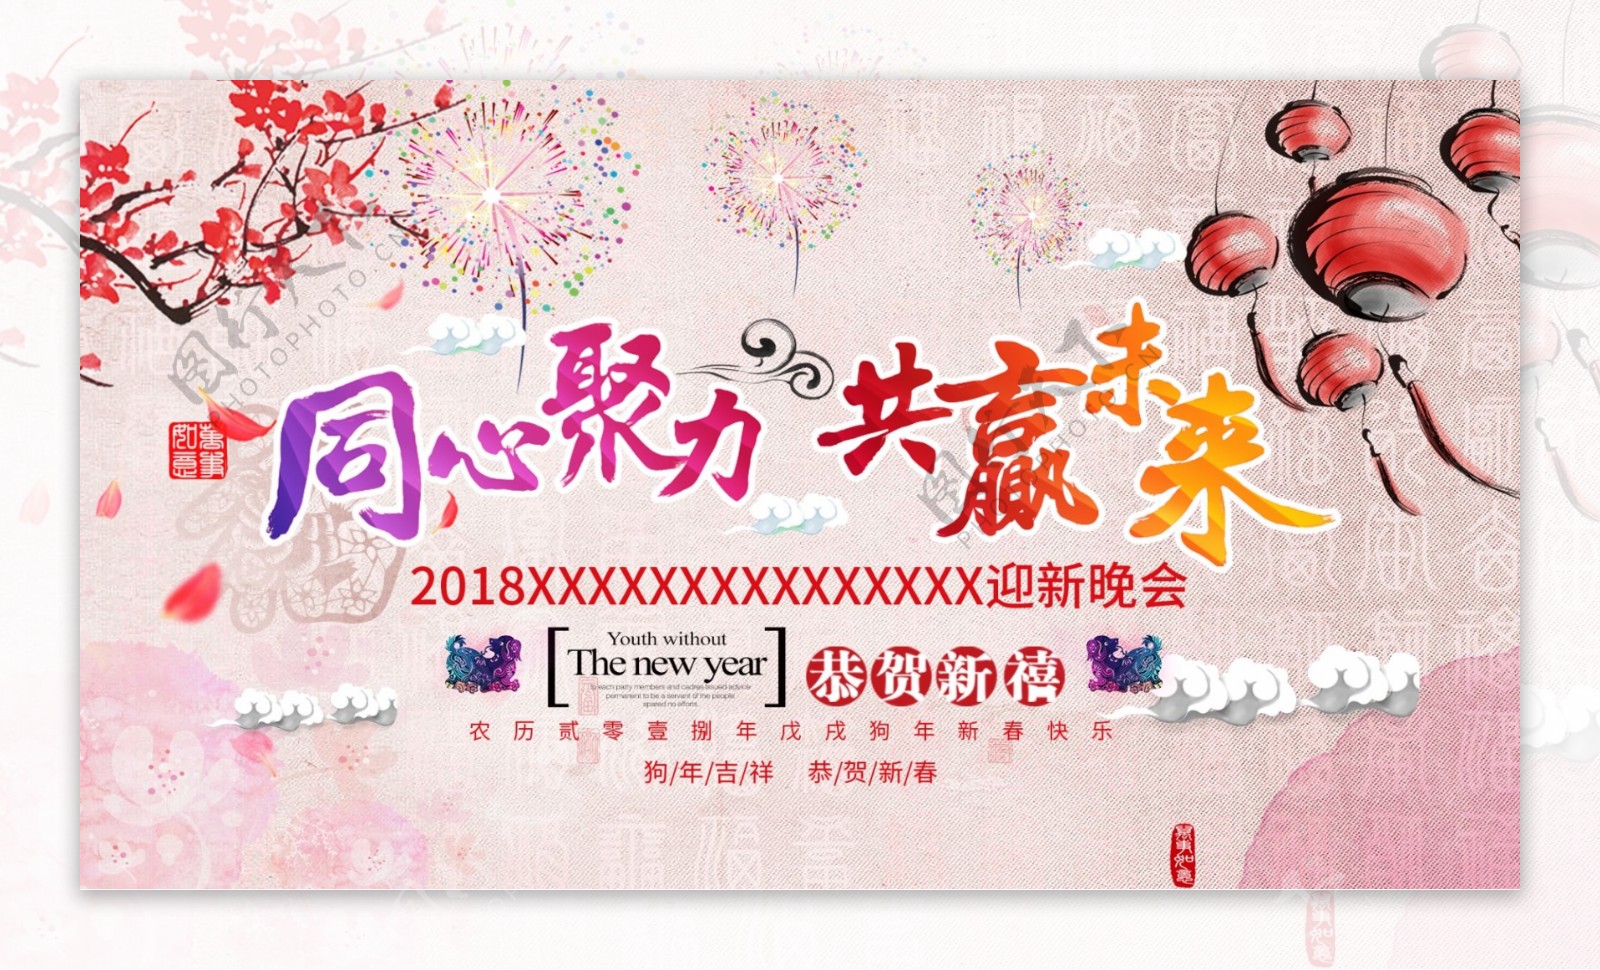 2018年会中国风宣传banner